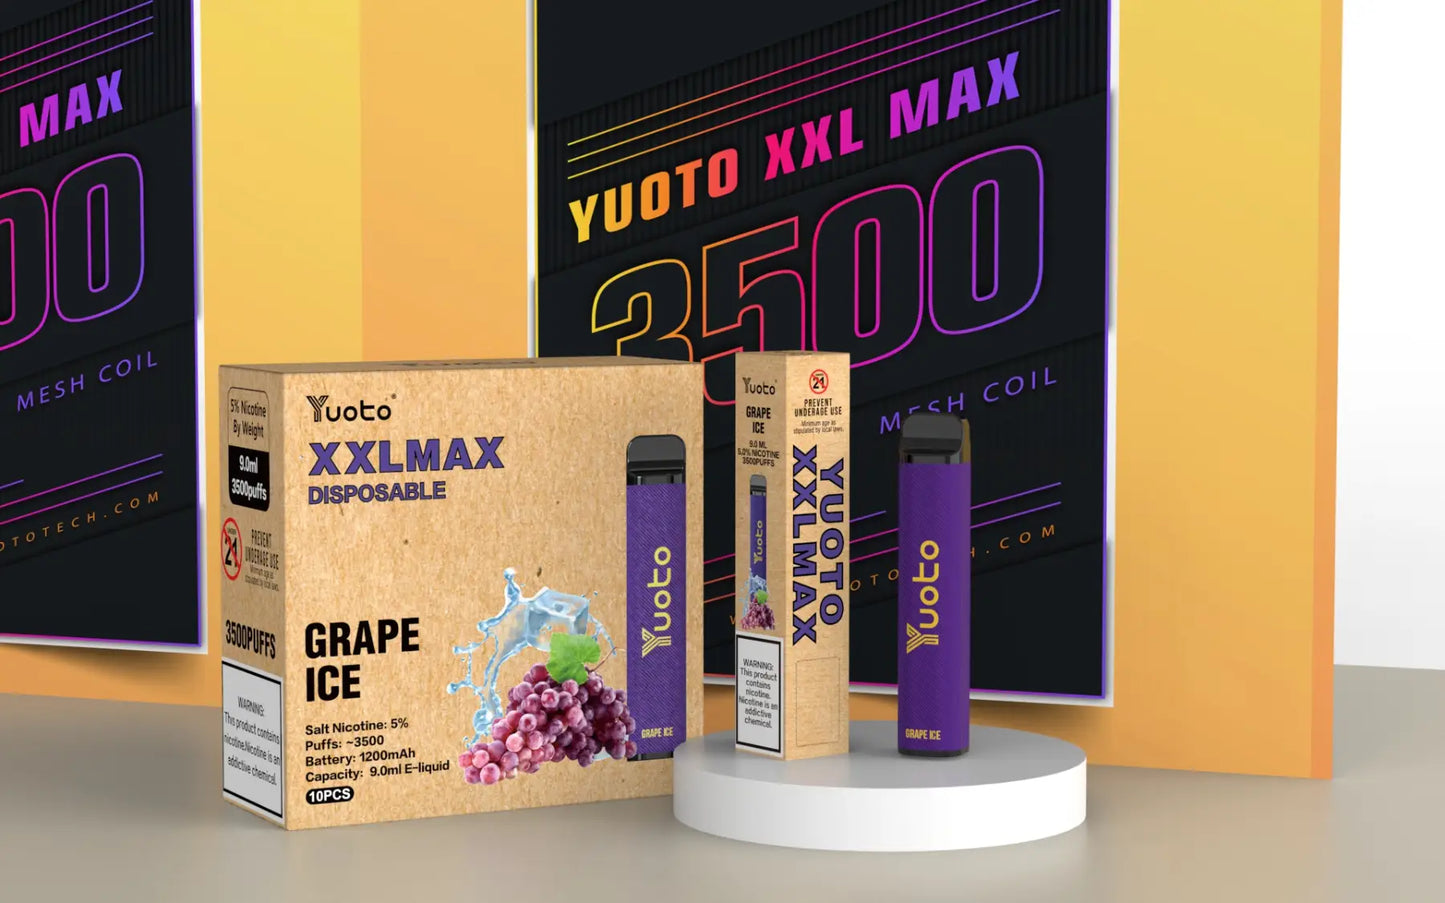 Upplev en intensiv och fruktig smakupplevelse med Yuoto XXL Max Grape Ice. Den ljuva smaken av druvor balanseras med en uppfriskande känsla av is, för en njutbar ångupplevelse varje gång. Prova det idag med din mechmod eller coil-kit!